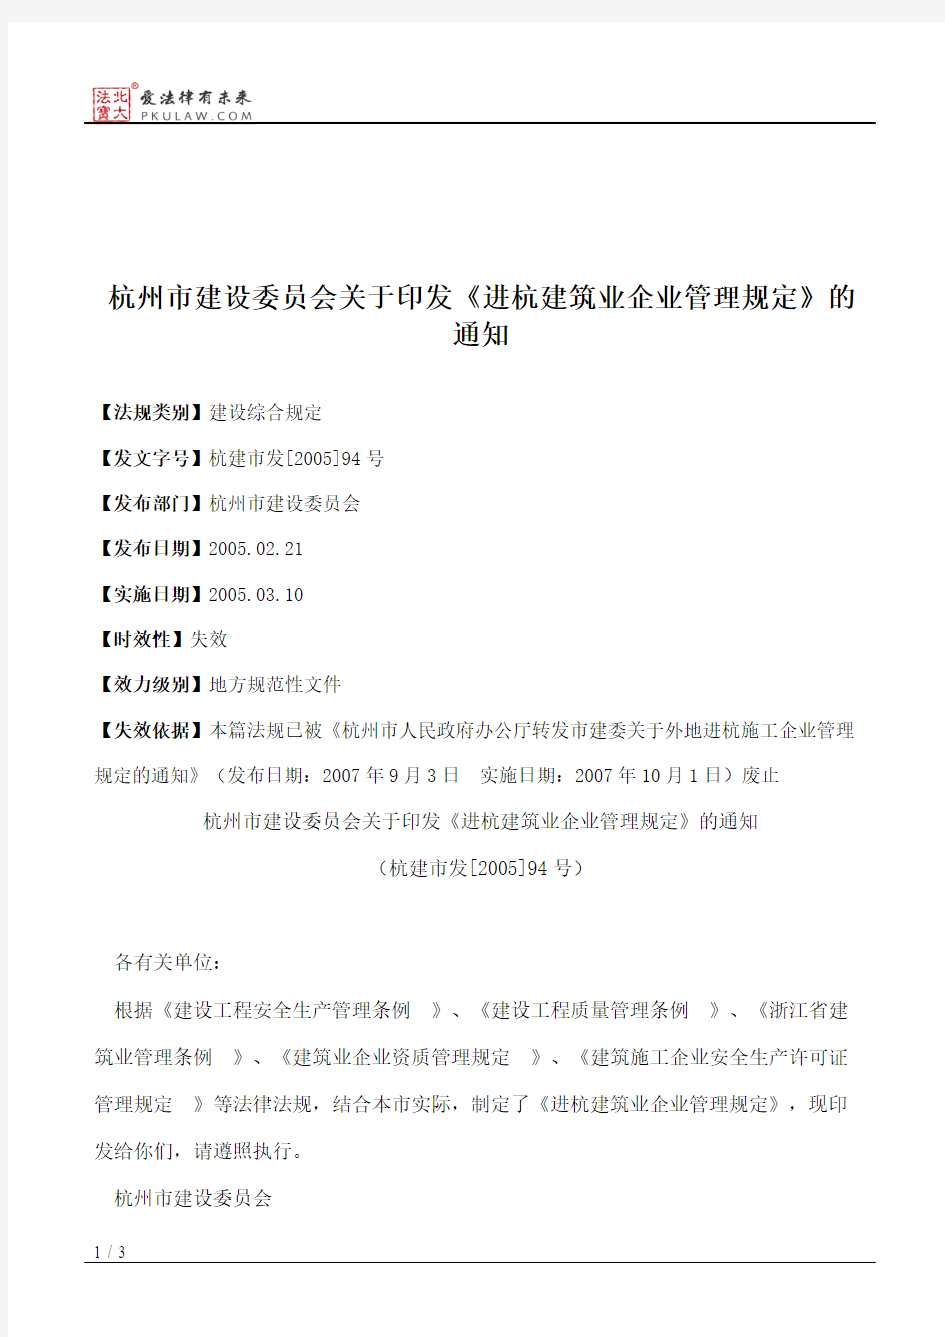 杭州市建设委员会关于印发《进杭建筑业企业管理规定》的通知